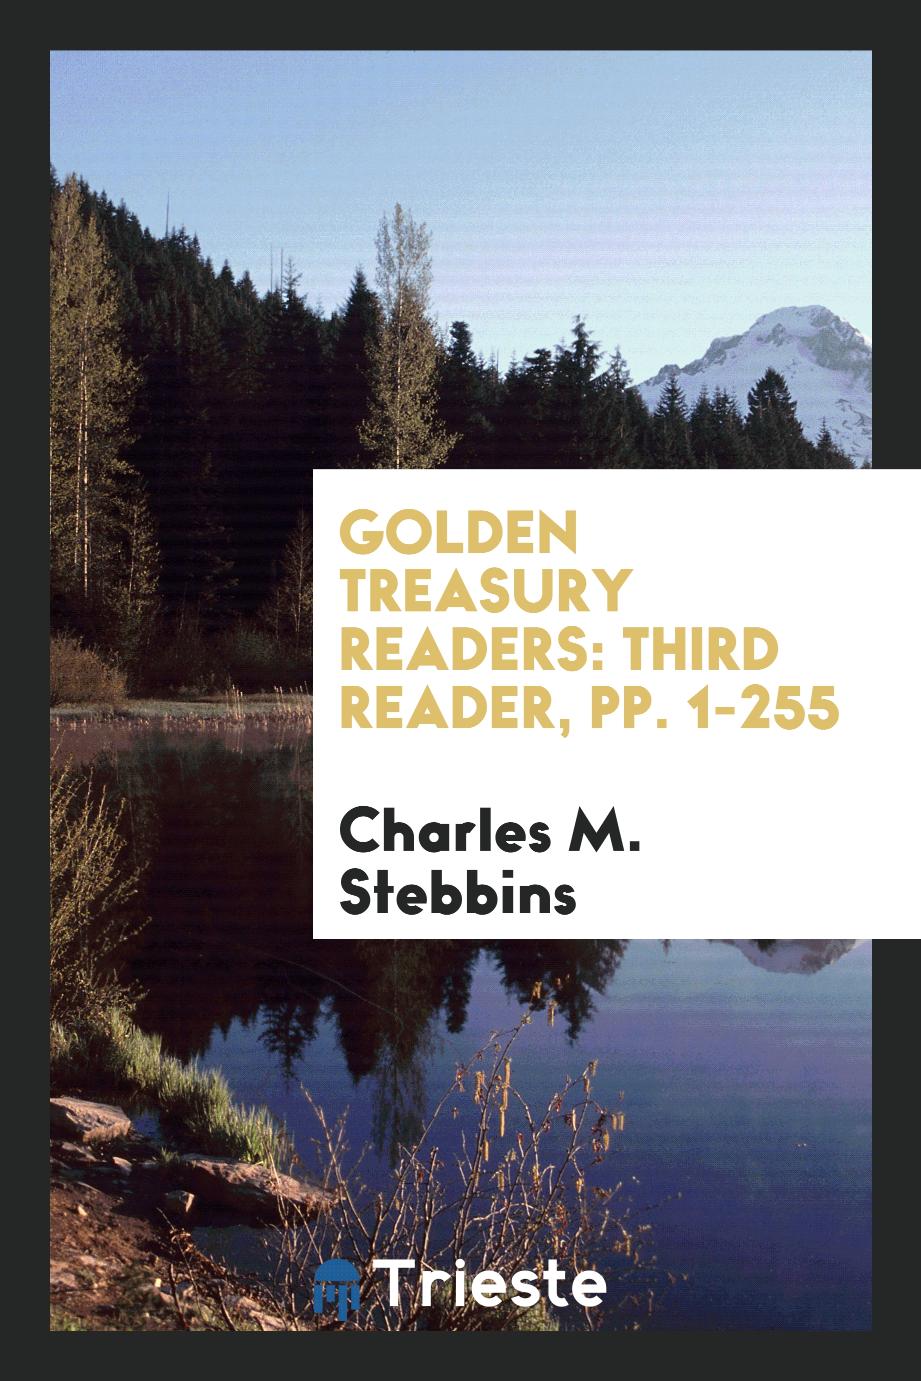 Golden Treasury Readers: Third Reader, pp. 1-255